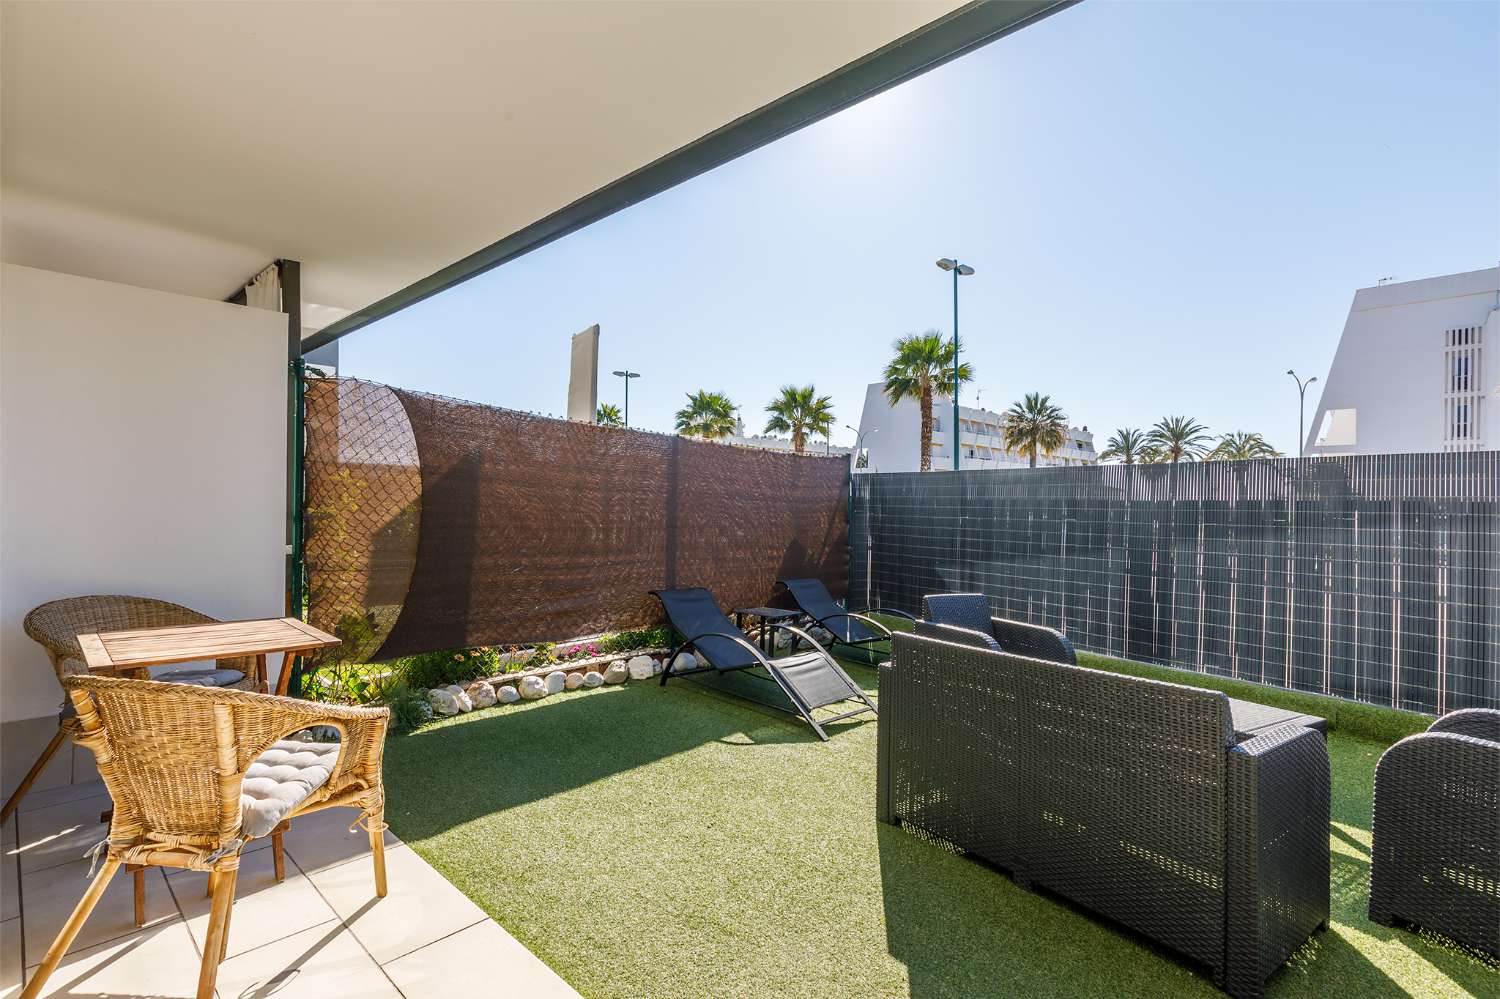 Appartement de trois chambres, avec jardin, barbecue et piscine communautaire à côté de la plage de Puerto de la Caleta